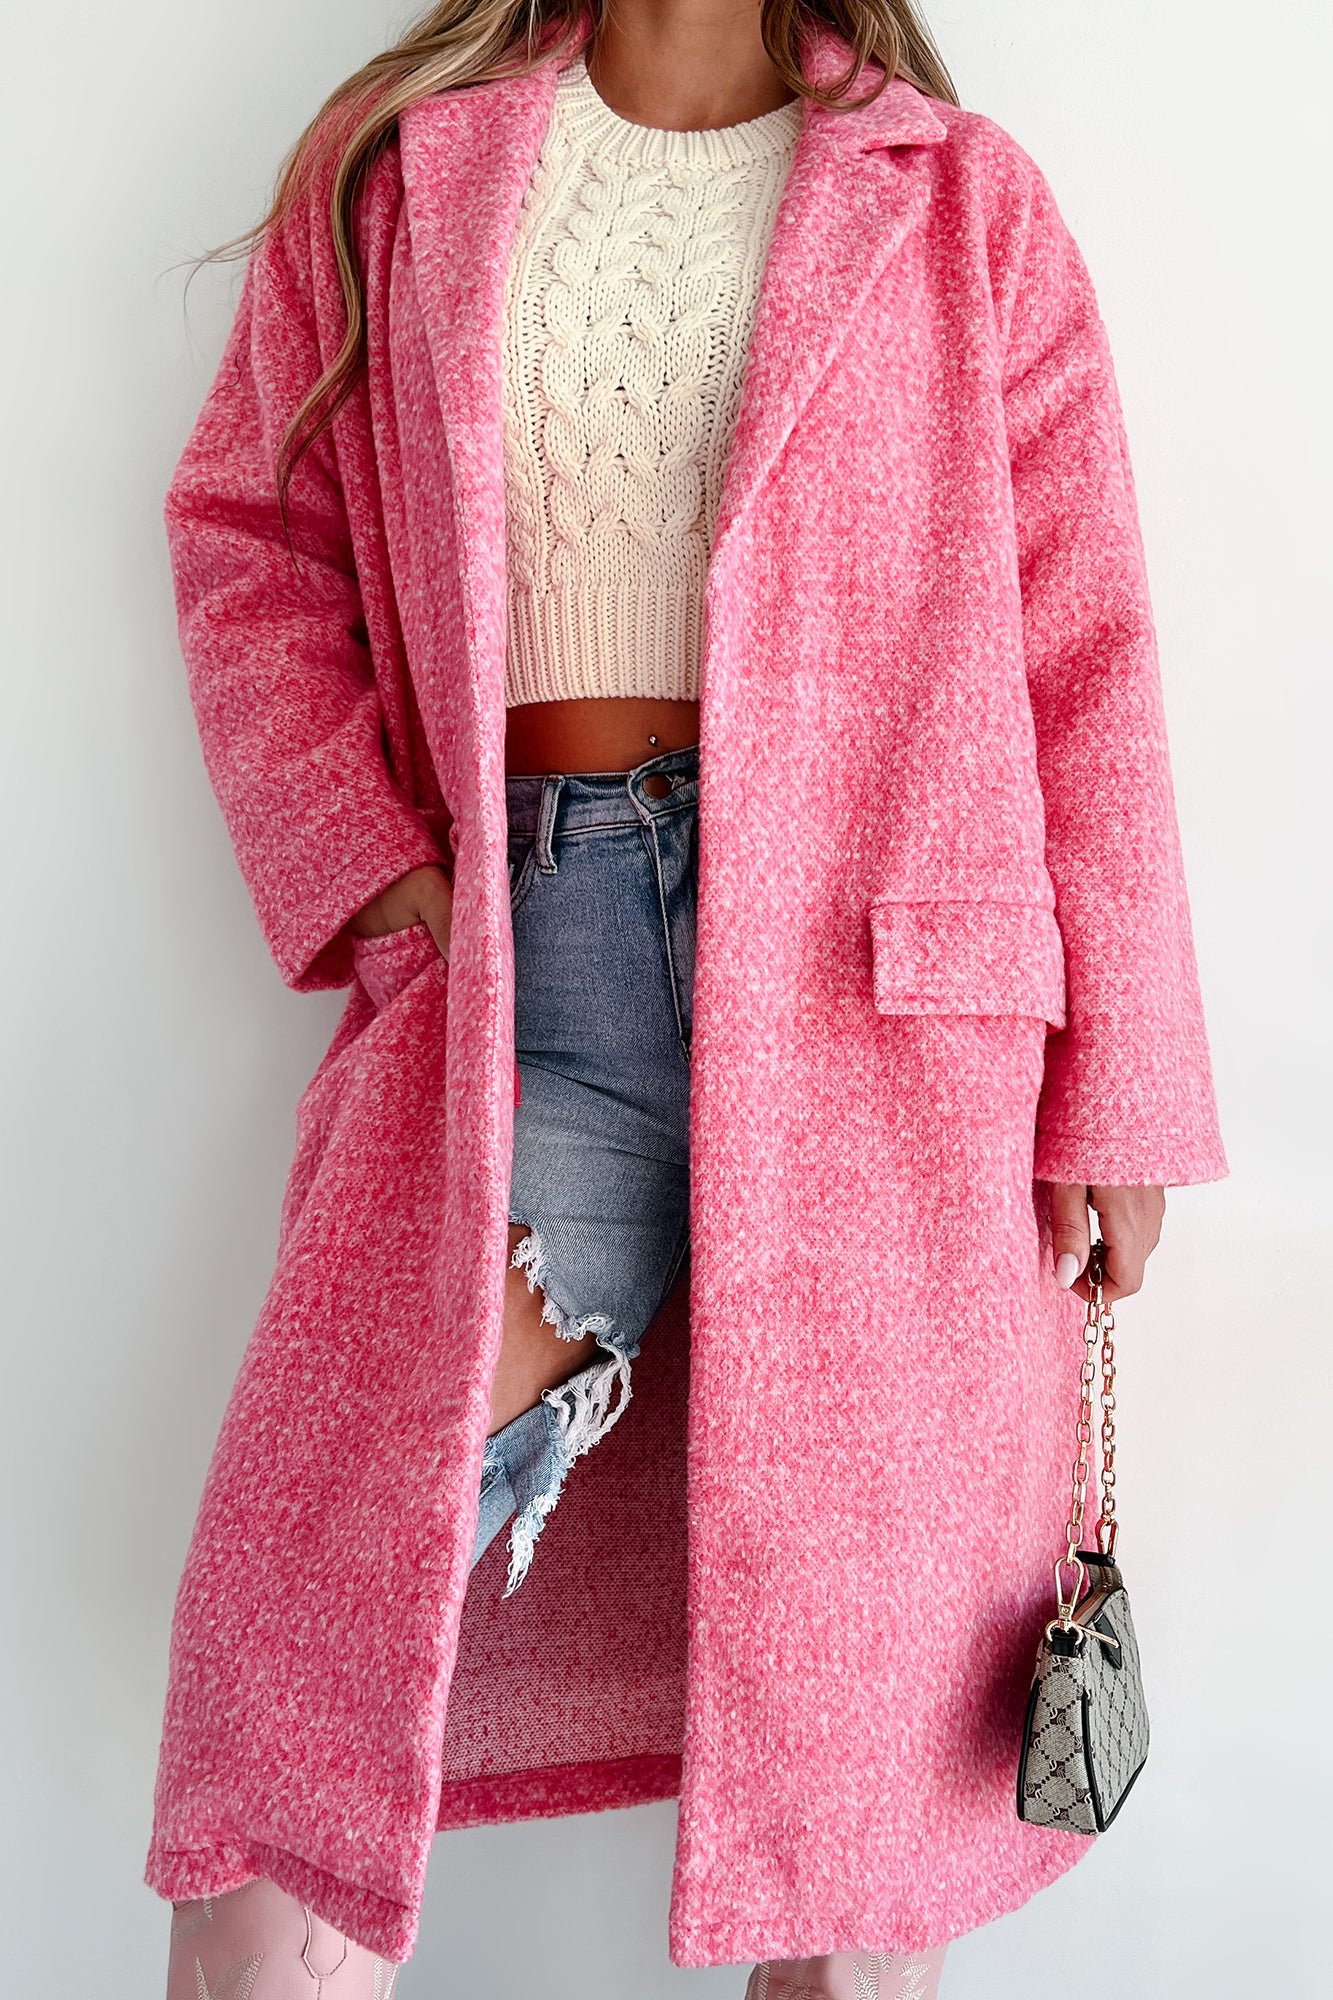 Bright & Bubbly Speckle Knit Jacket (Pink) - NanaMacs